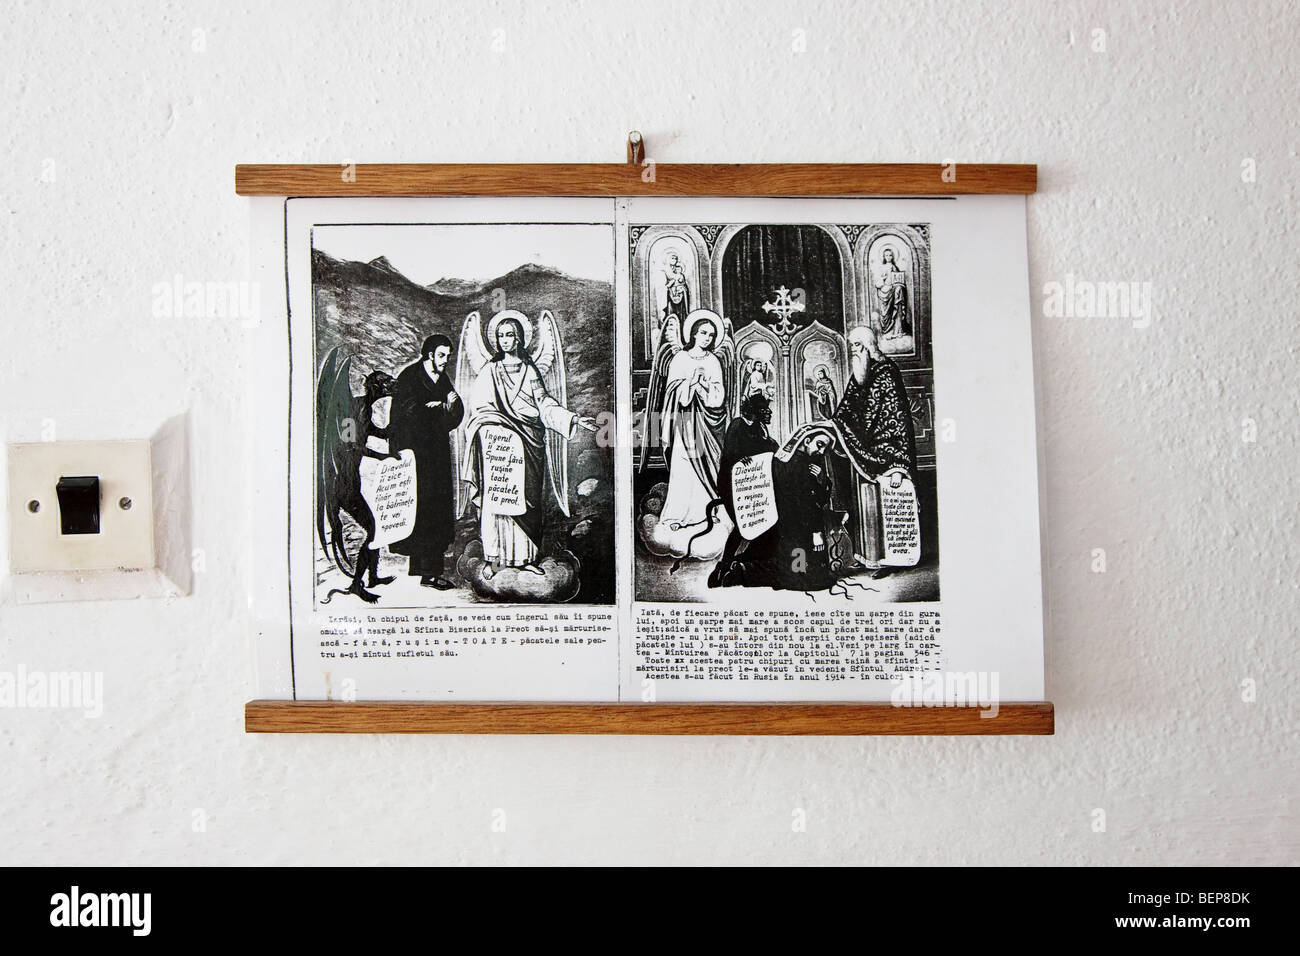 Della chiesa ortodossa rumena motivazioni nella casa di ospiti della Chiesa ortodossa rumena monastero Ramet, Transilvania, Romania Foto Stock